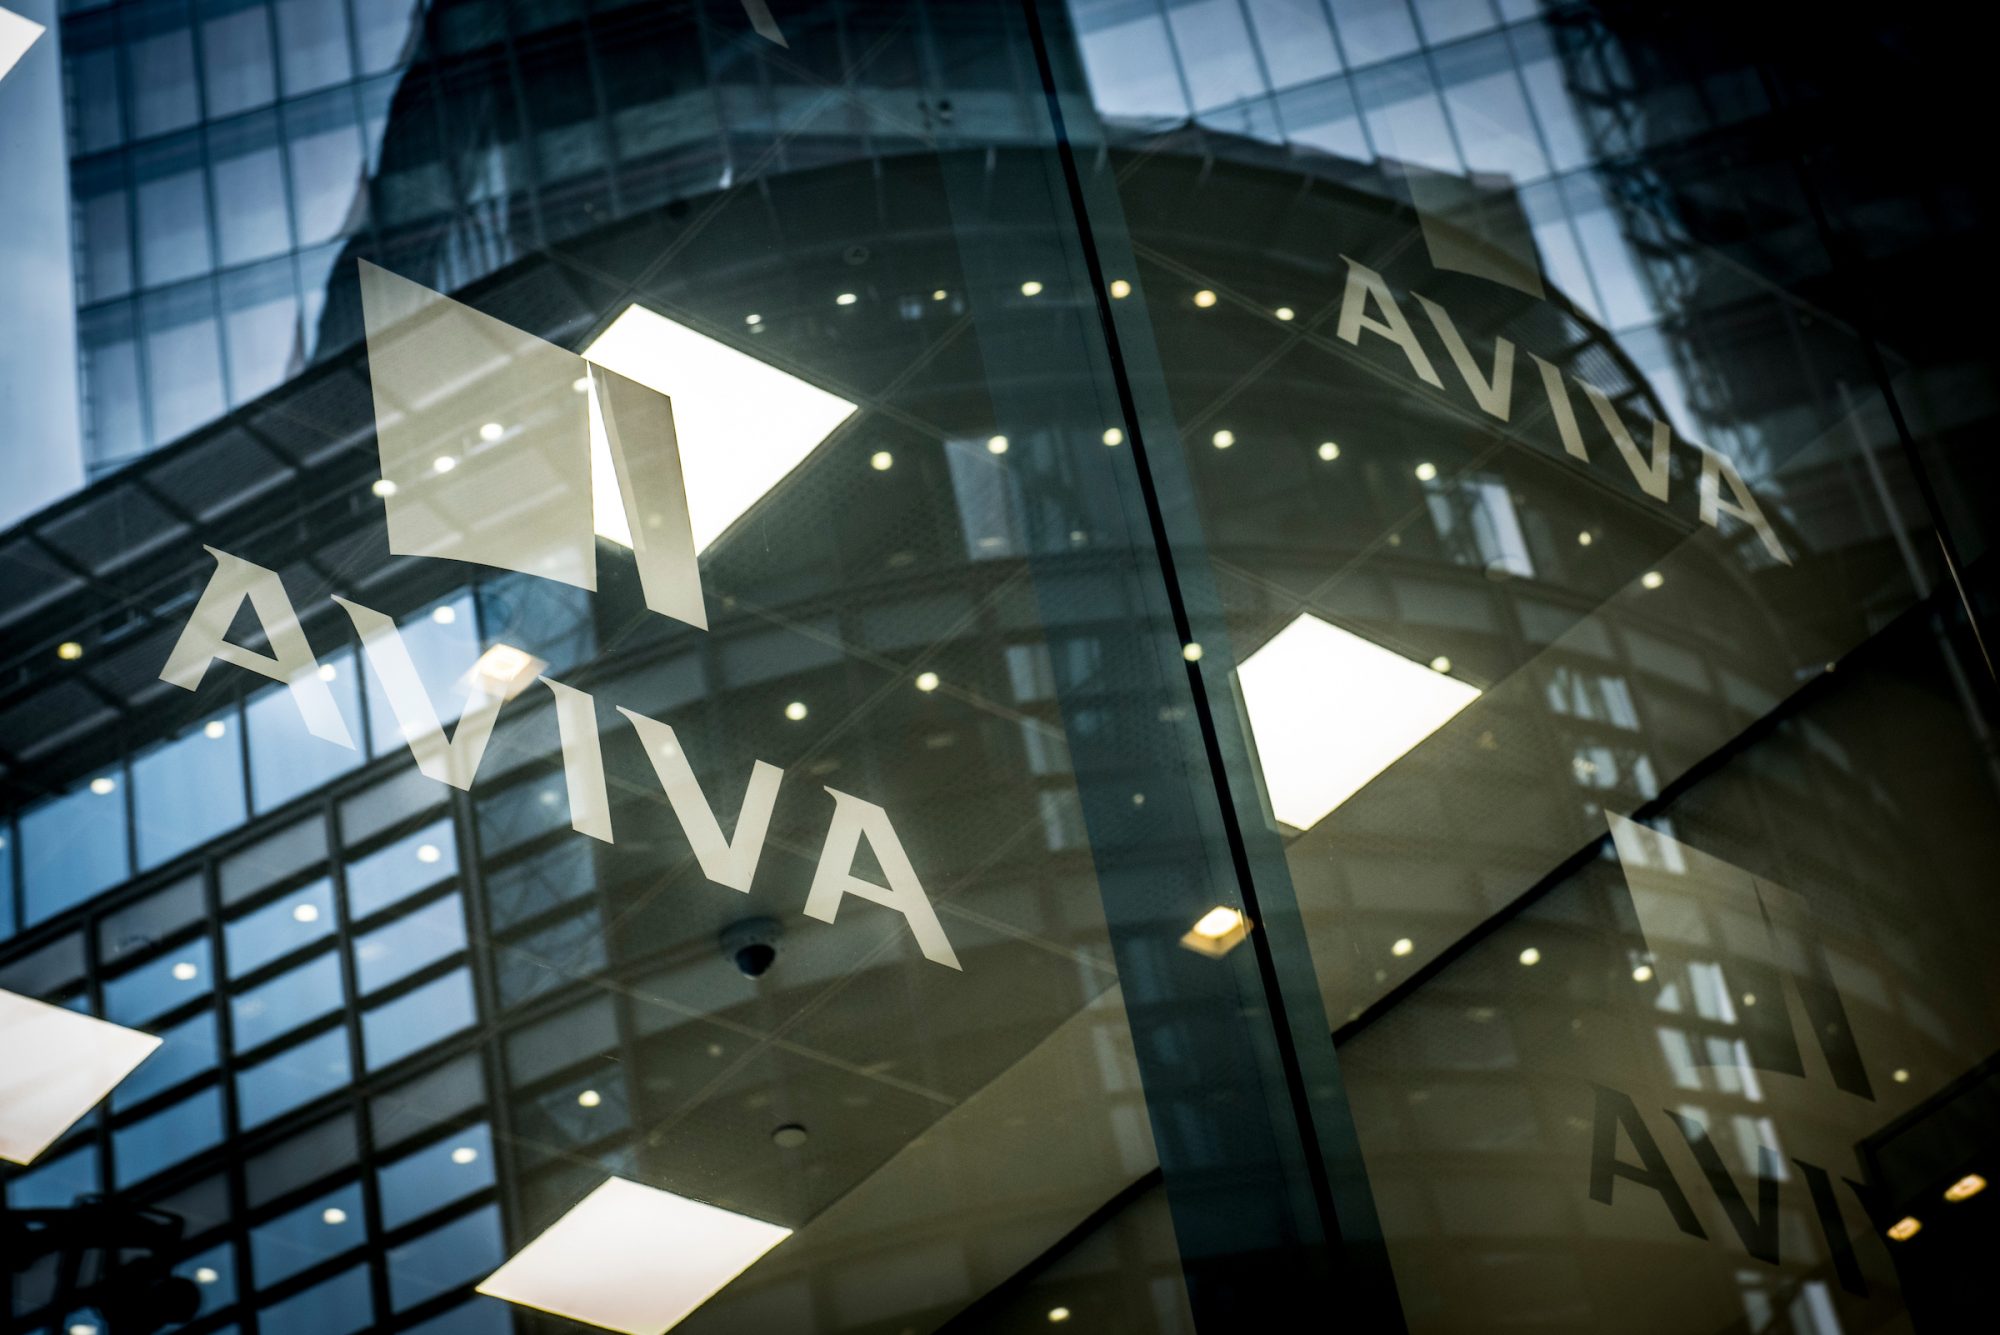 Reflection of Aviva logo in glass buildings